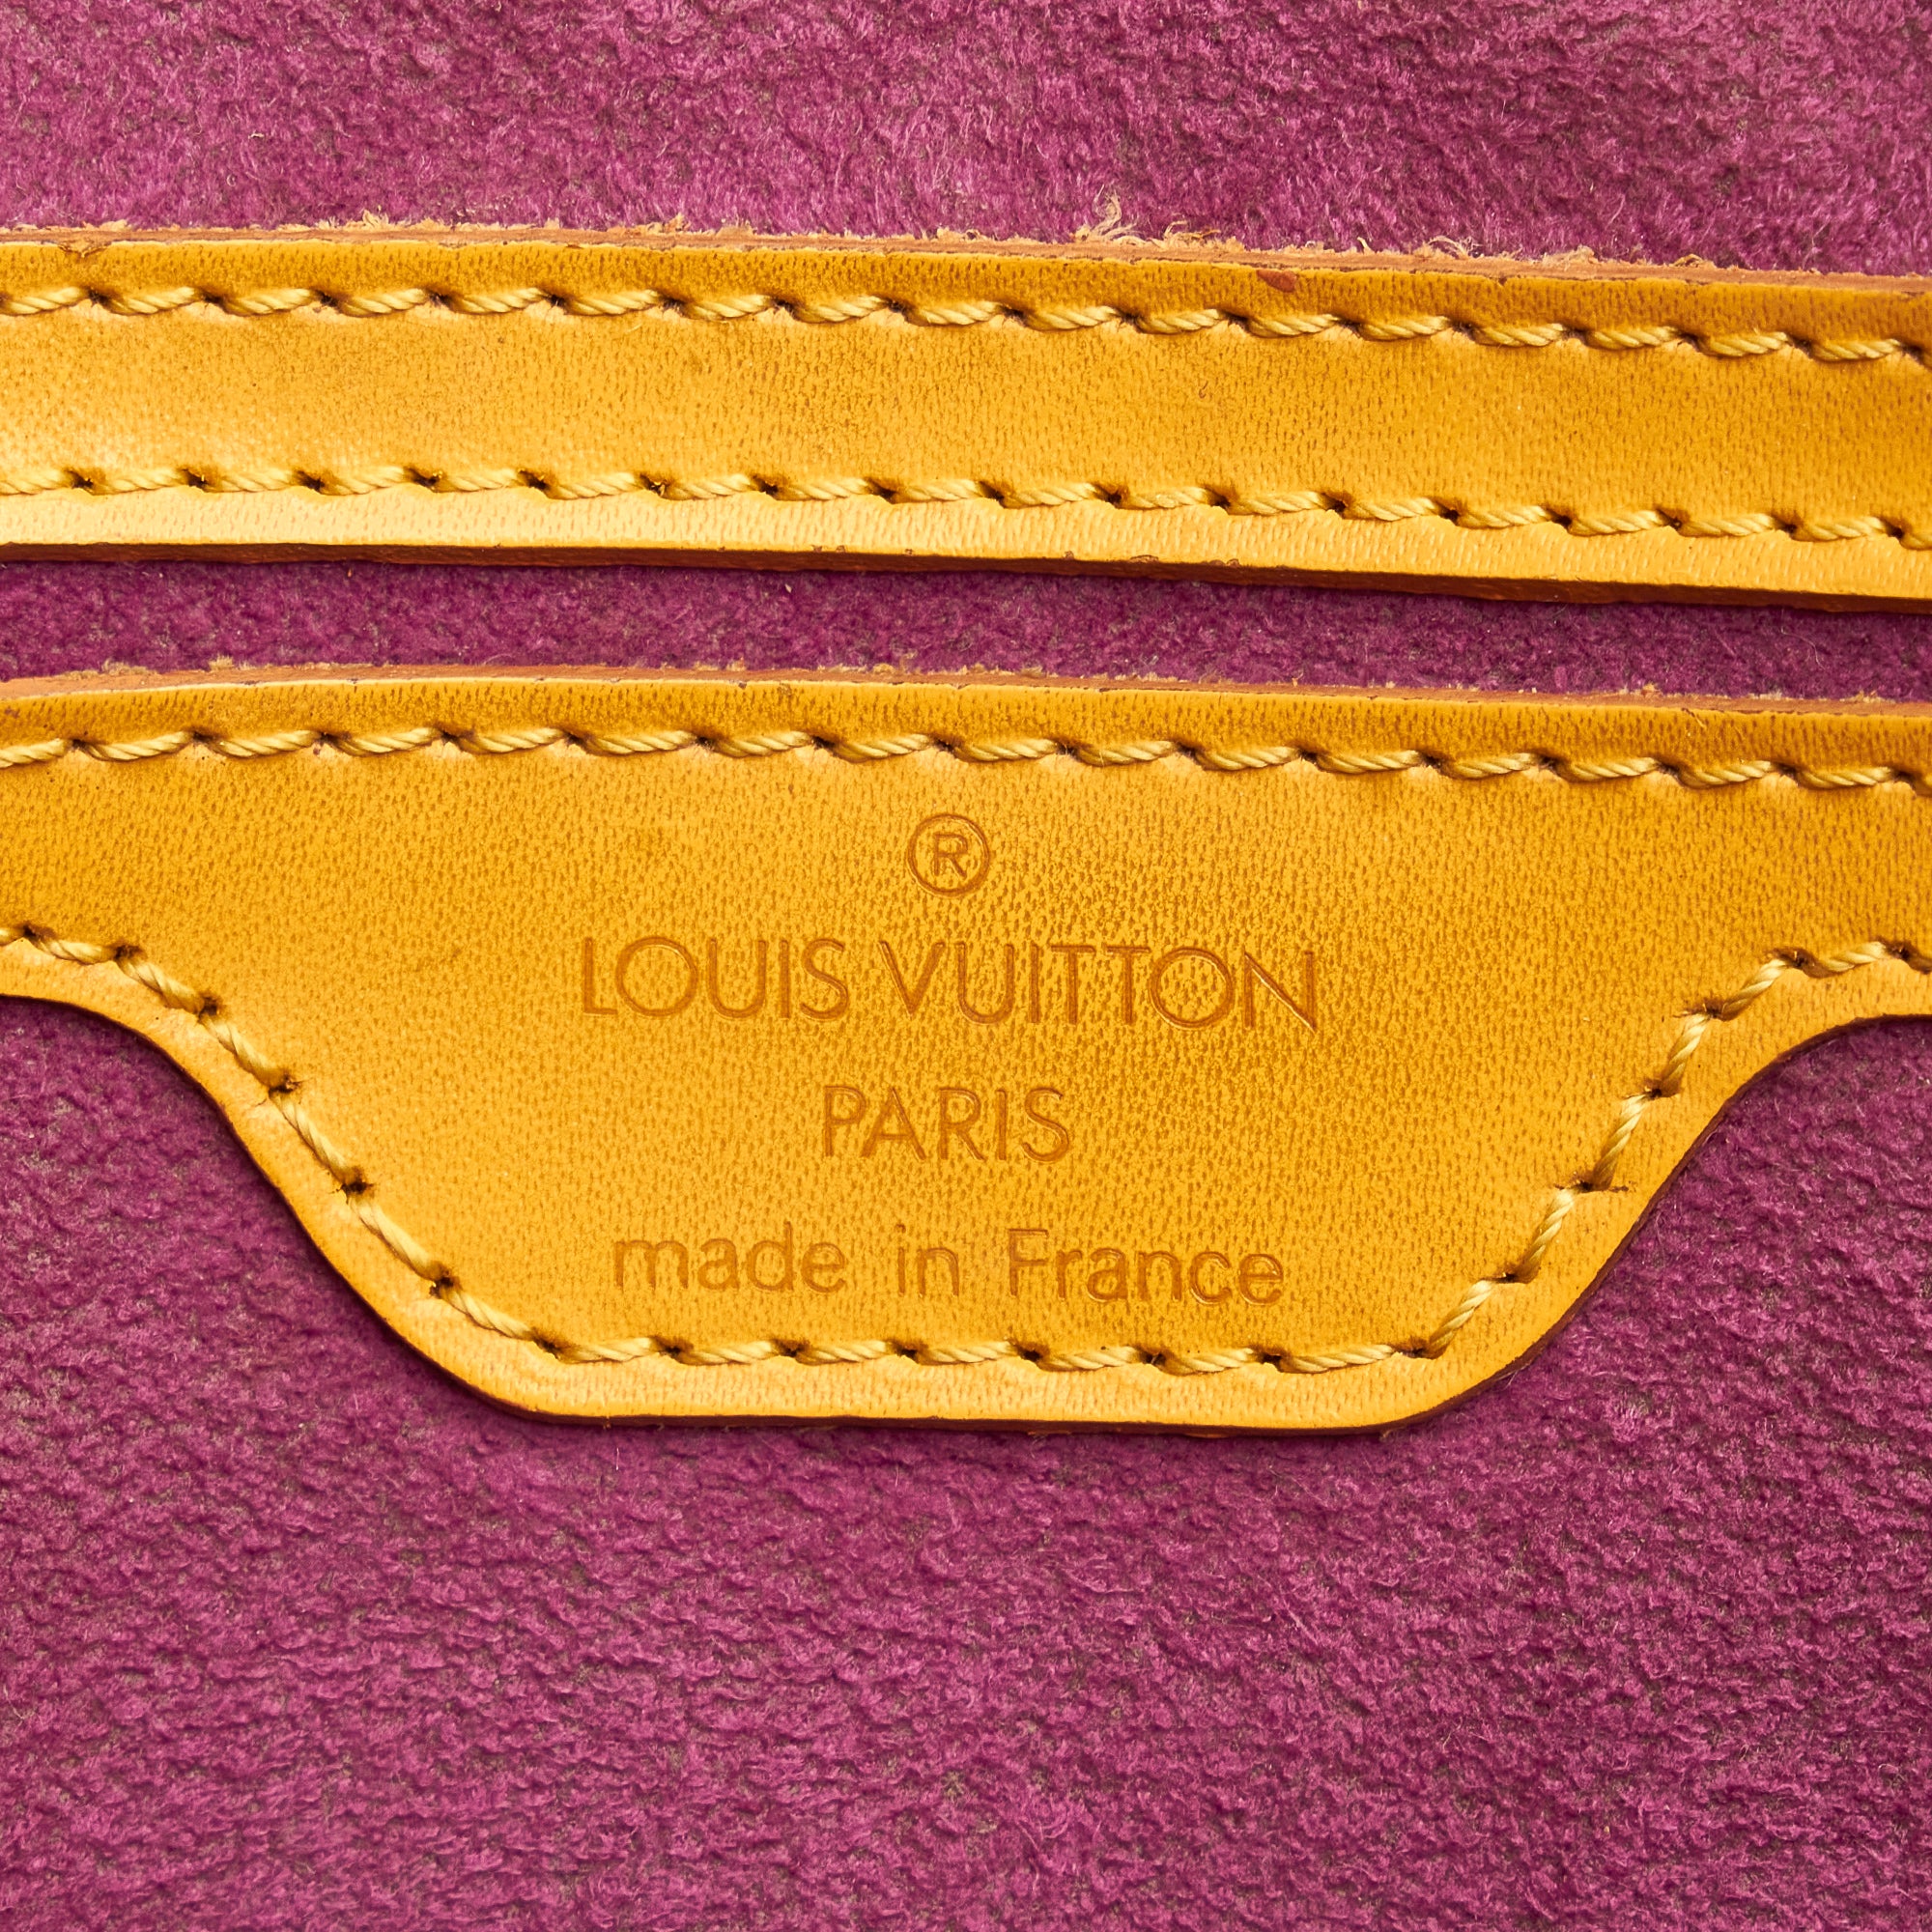 Louis Vuitton Saint Jacques PM Red Epi Handbag